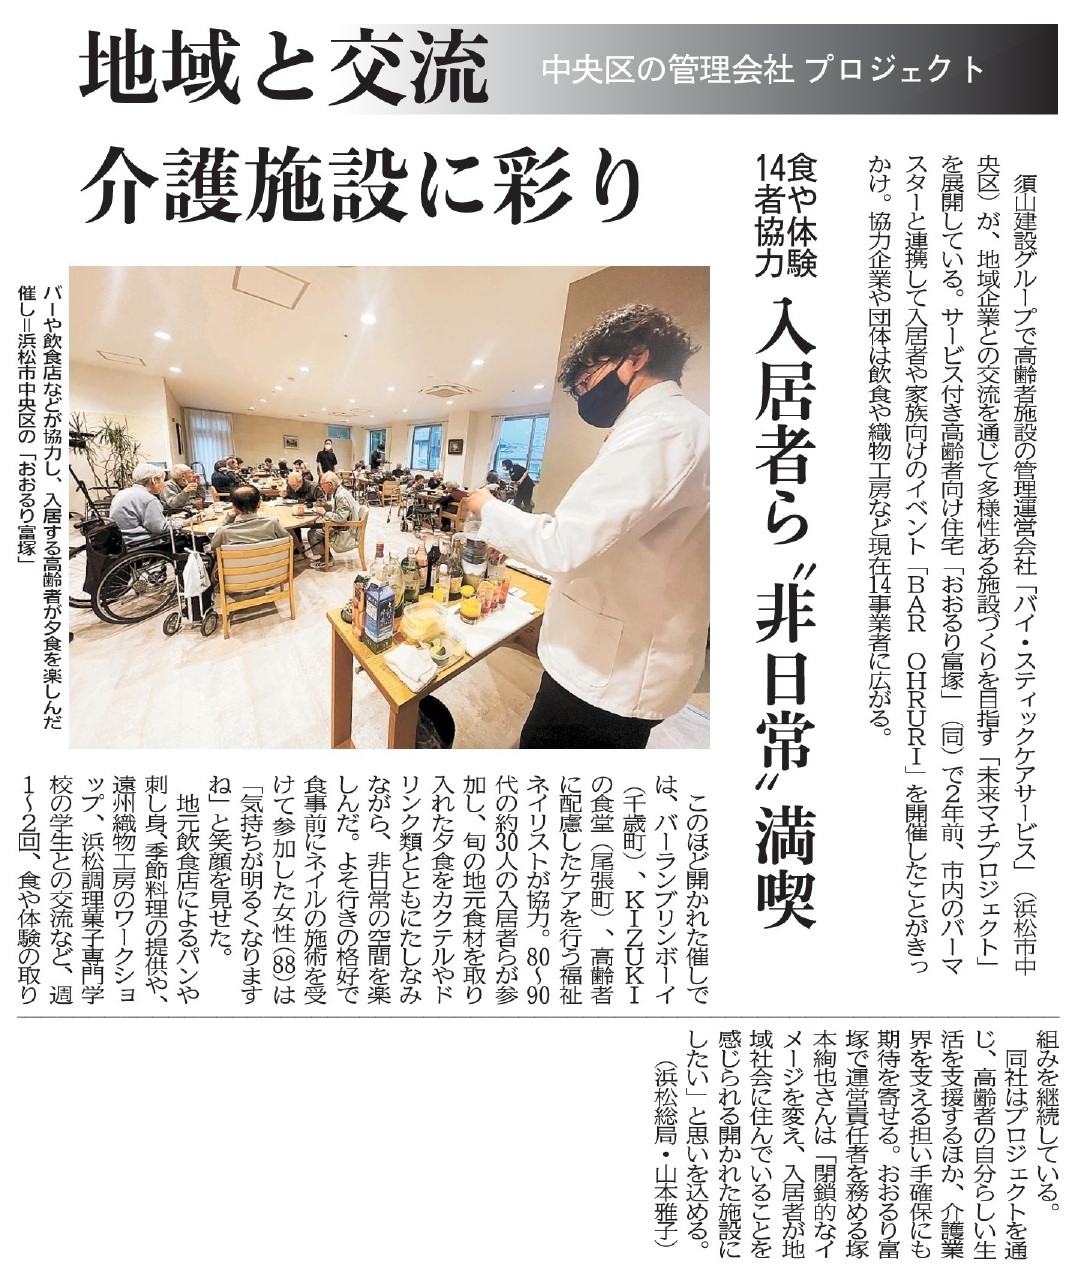 「おおるり富塚」の取り組みが静岡新聞に掲載されました